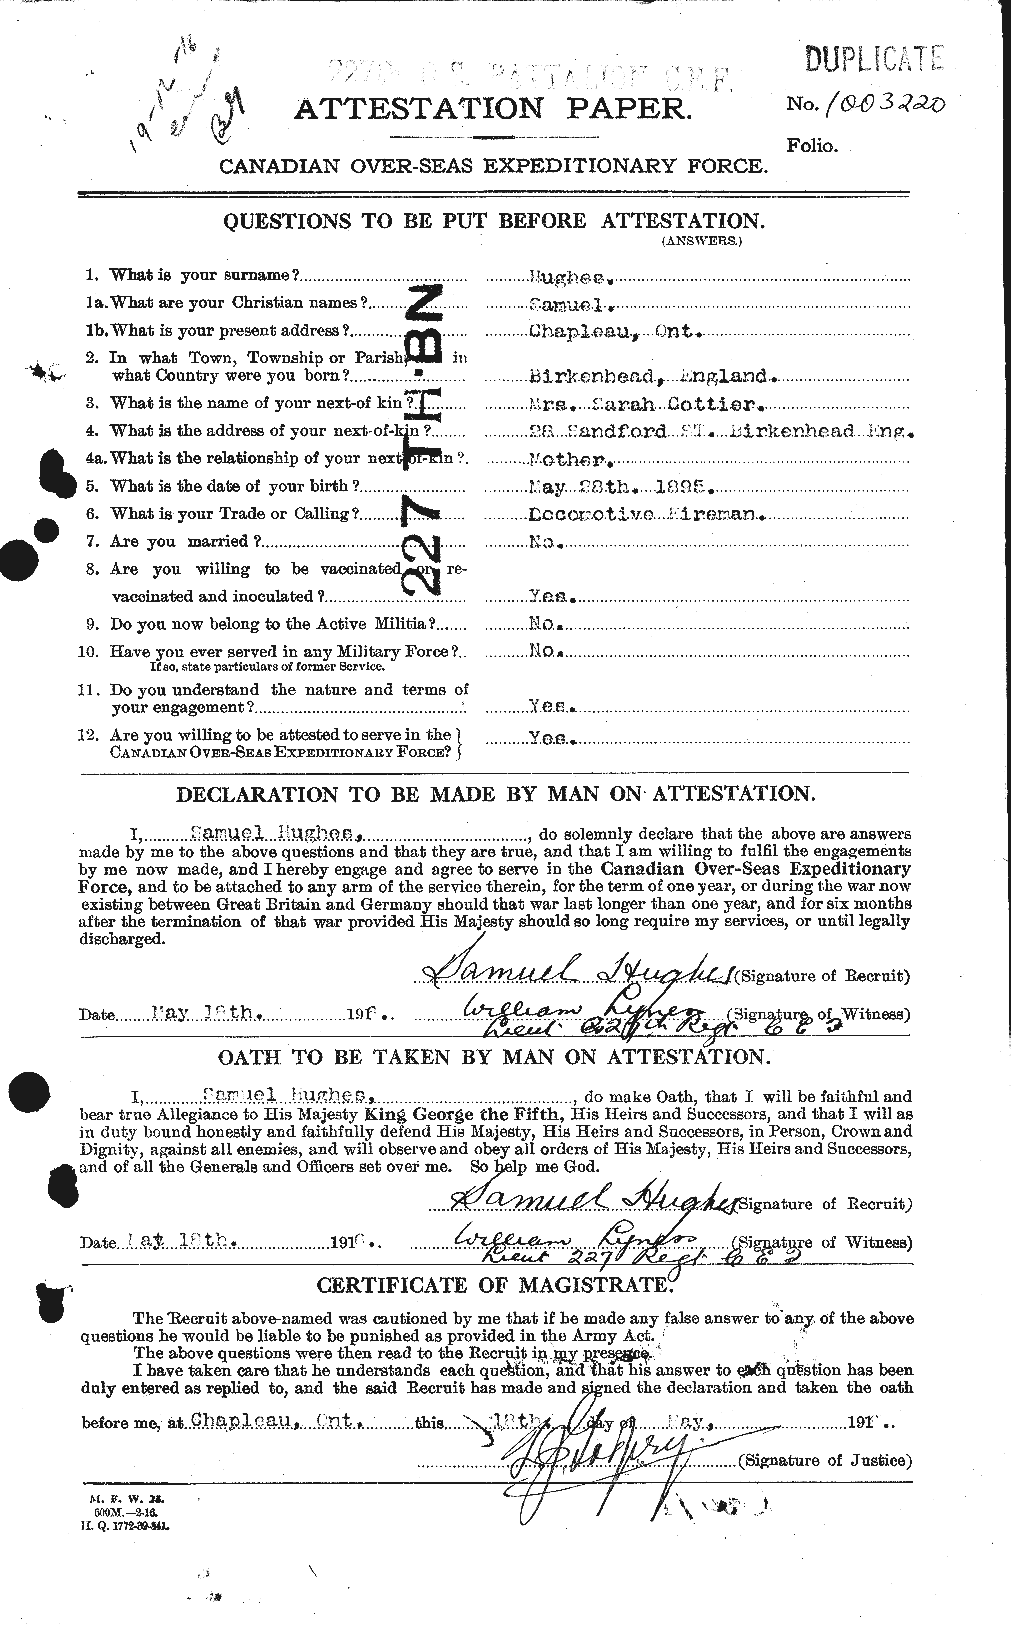 Dossiers du Personnel de la Première Guerre mondiale - CEC 406637a